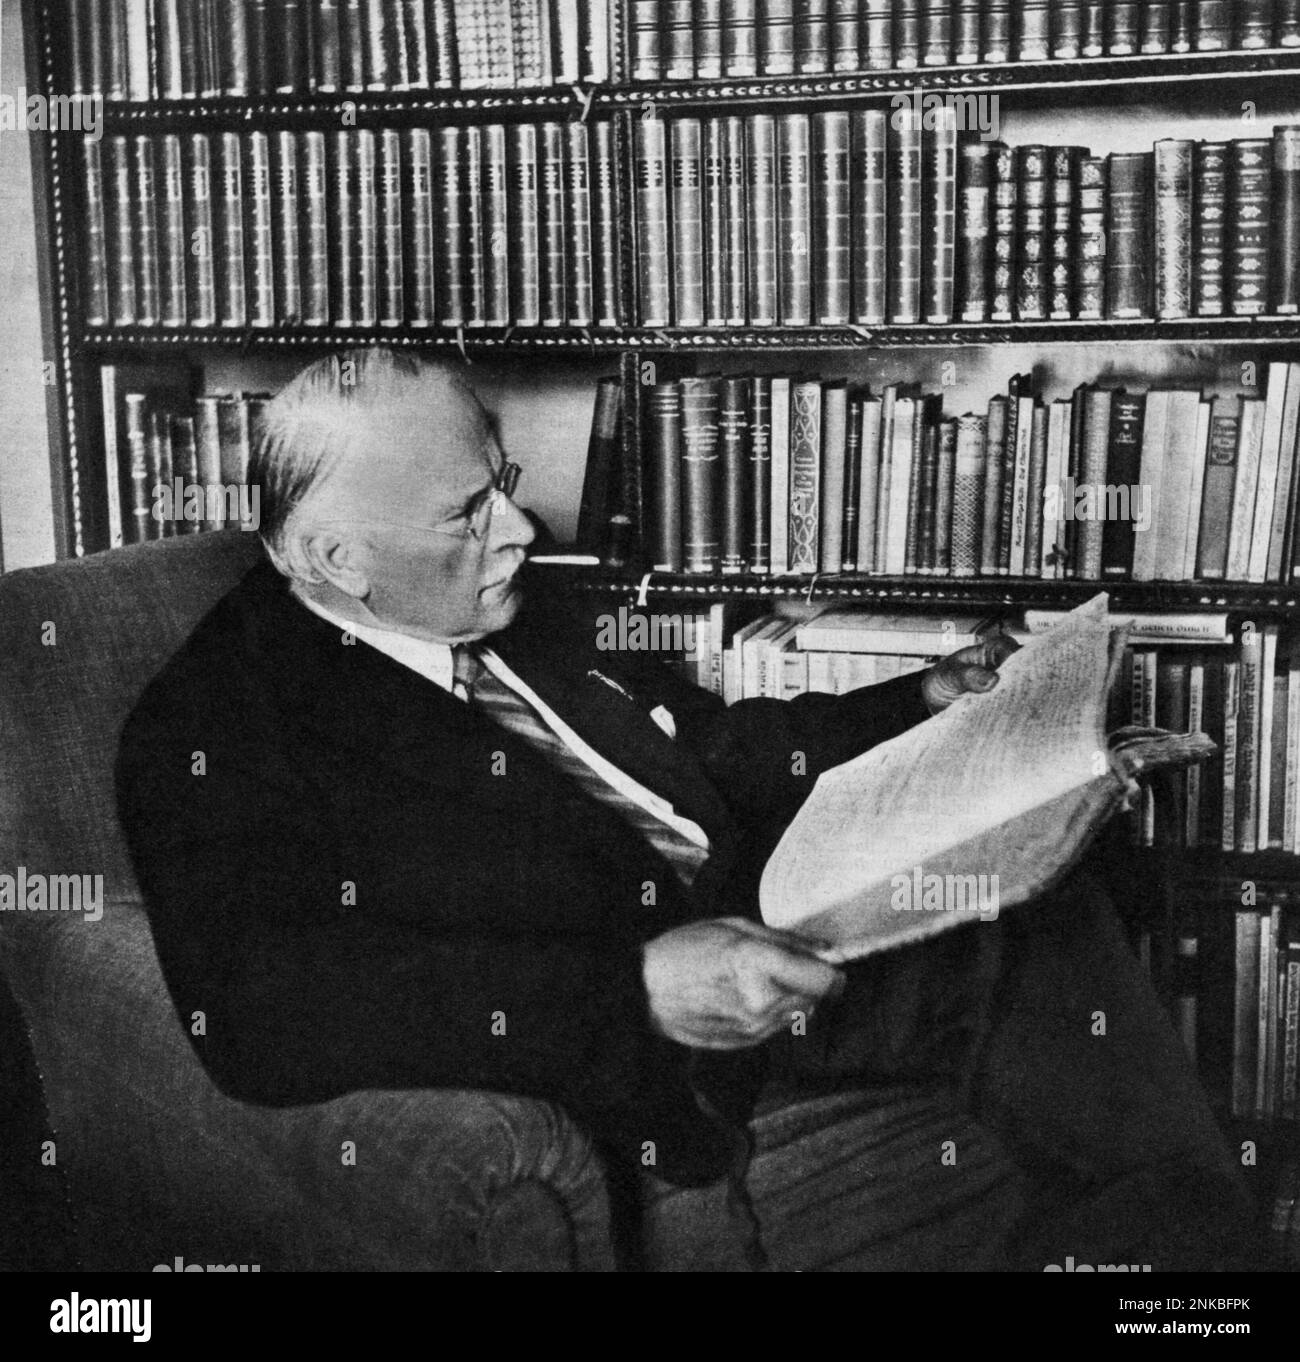 1955 , Kussnacht , Zurigo : il celebre psicolista CARL GUSTAV JOUNG ( Kesswyl 1875 - Kusnacht 1961 ) , Studioso con Sigmund Freud a Wienn nel 1907 - PSICANALISTA - PSICOANALISTA - PSICANALISI - PSICOANALISI - psicoanalisi - cravatta - cravatta - etichetta - lettore - libro - libro - libro - biblioteca - biblioteca ---- Archivio GBB Foto Stock